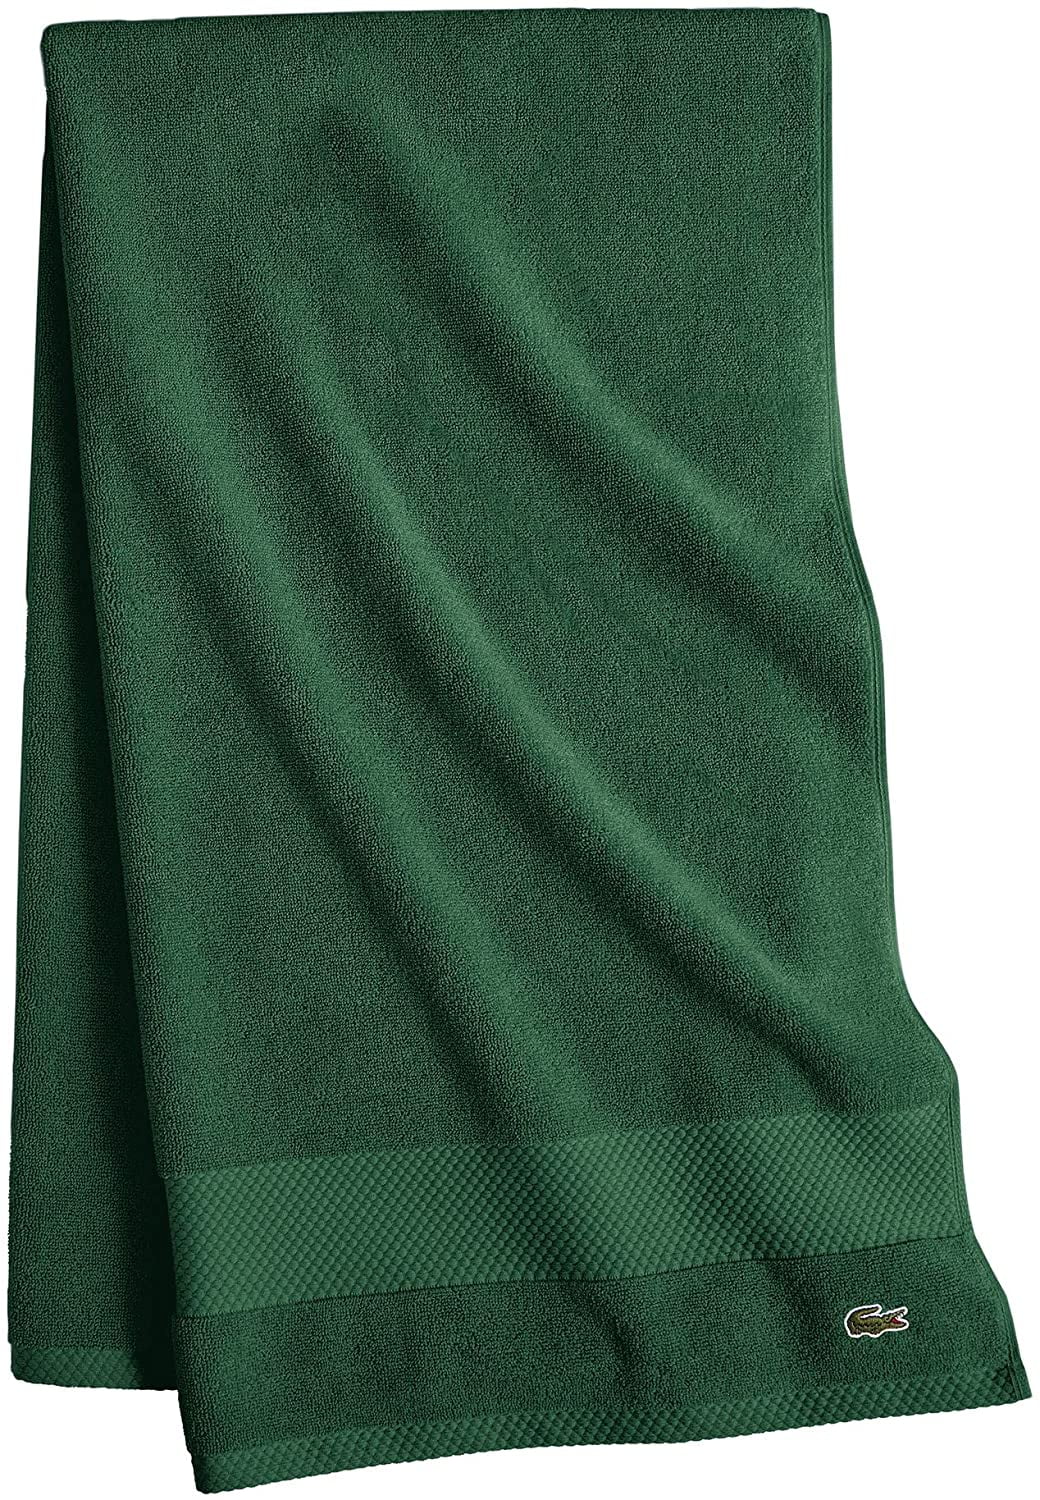 Lacoste Big Crocodile🐊 Logo Bath Towels 30x52 Teal Cotton New W/ Tags  Summer🌞